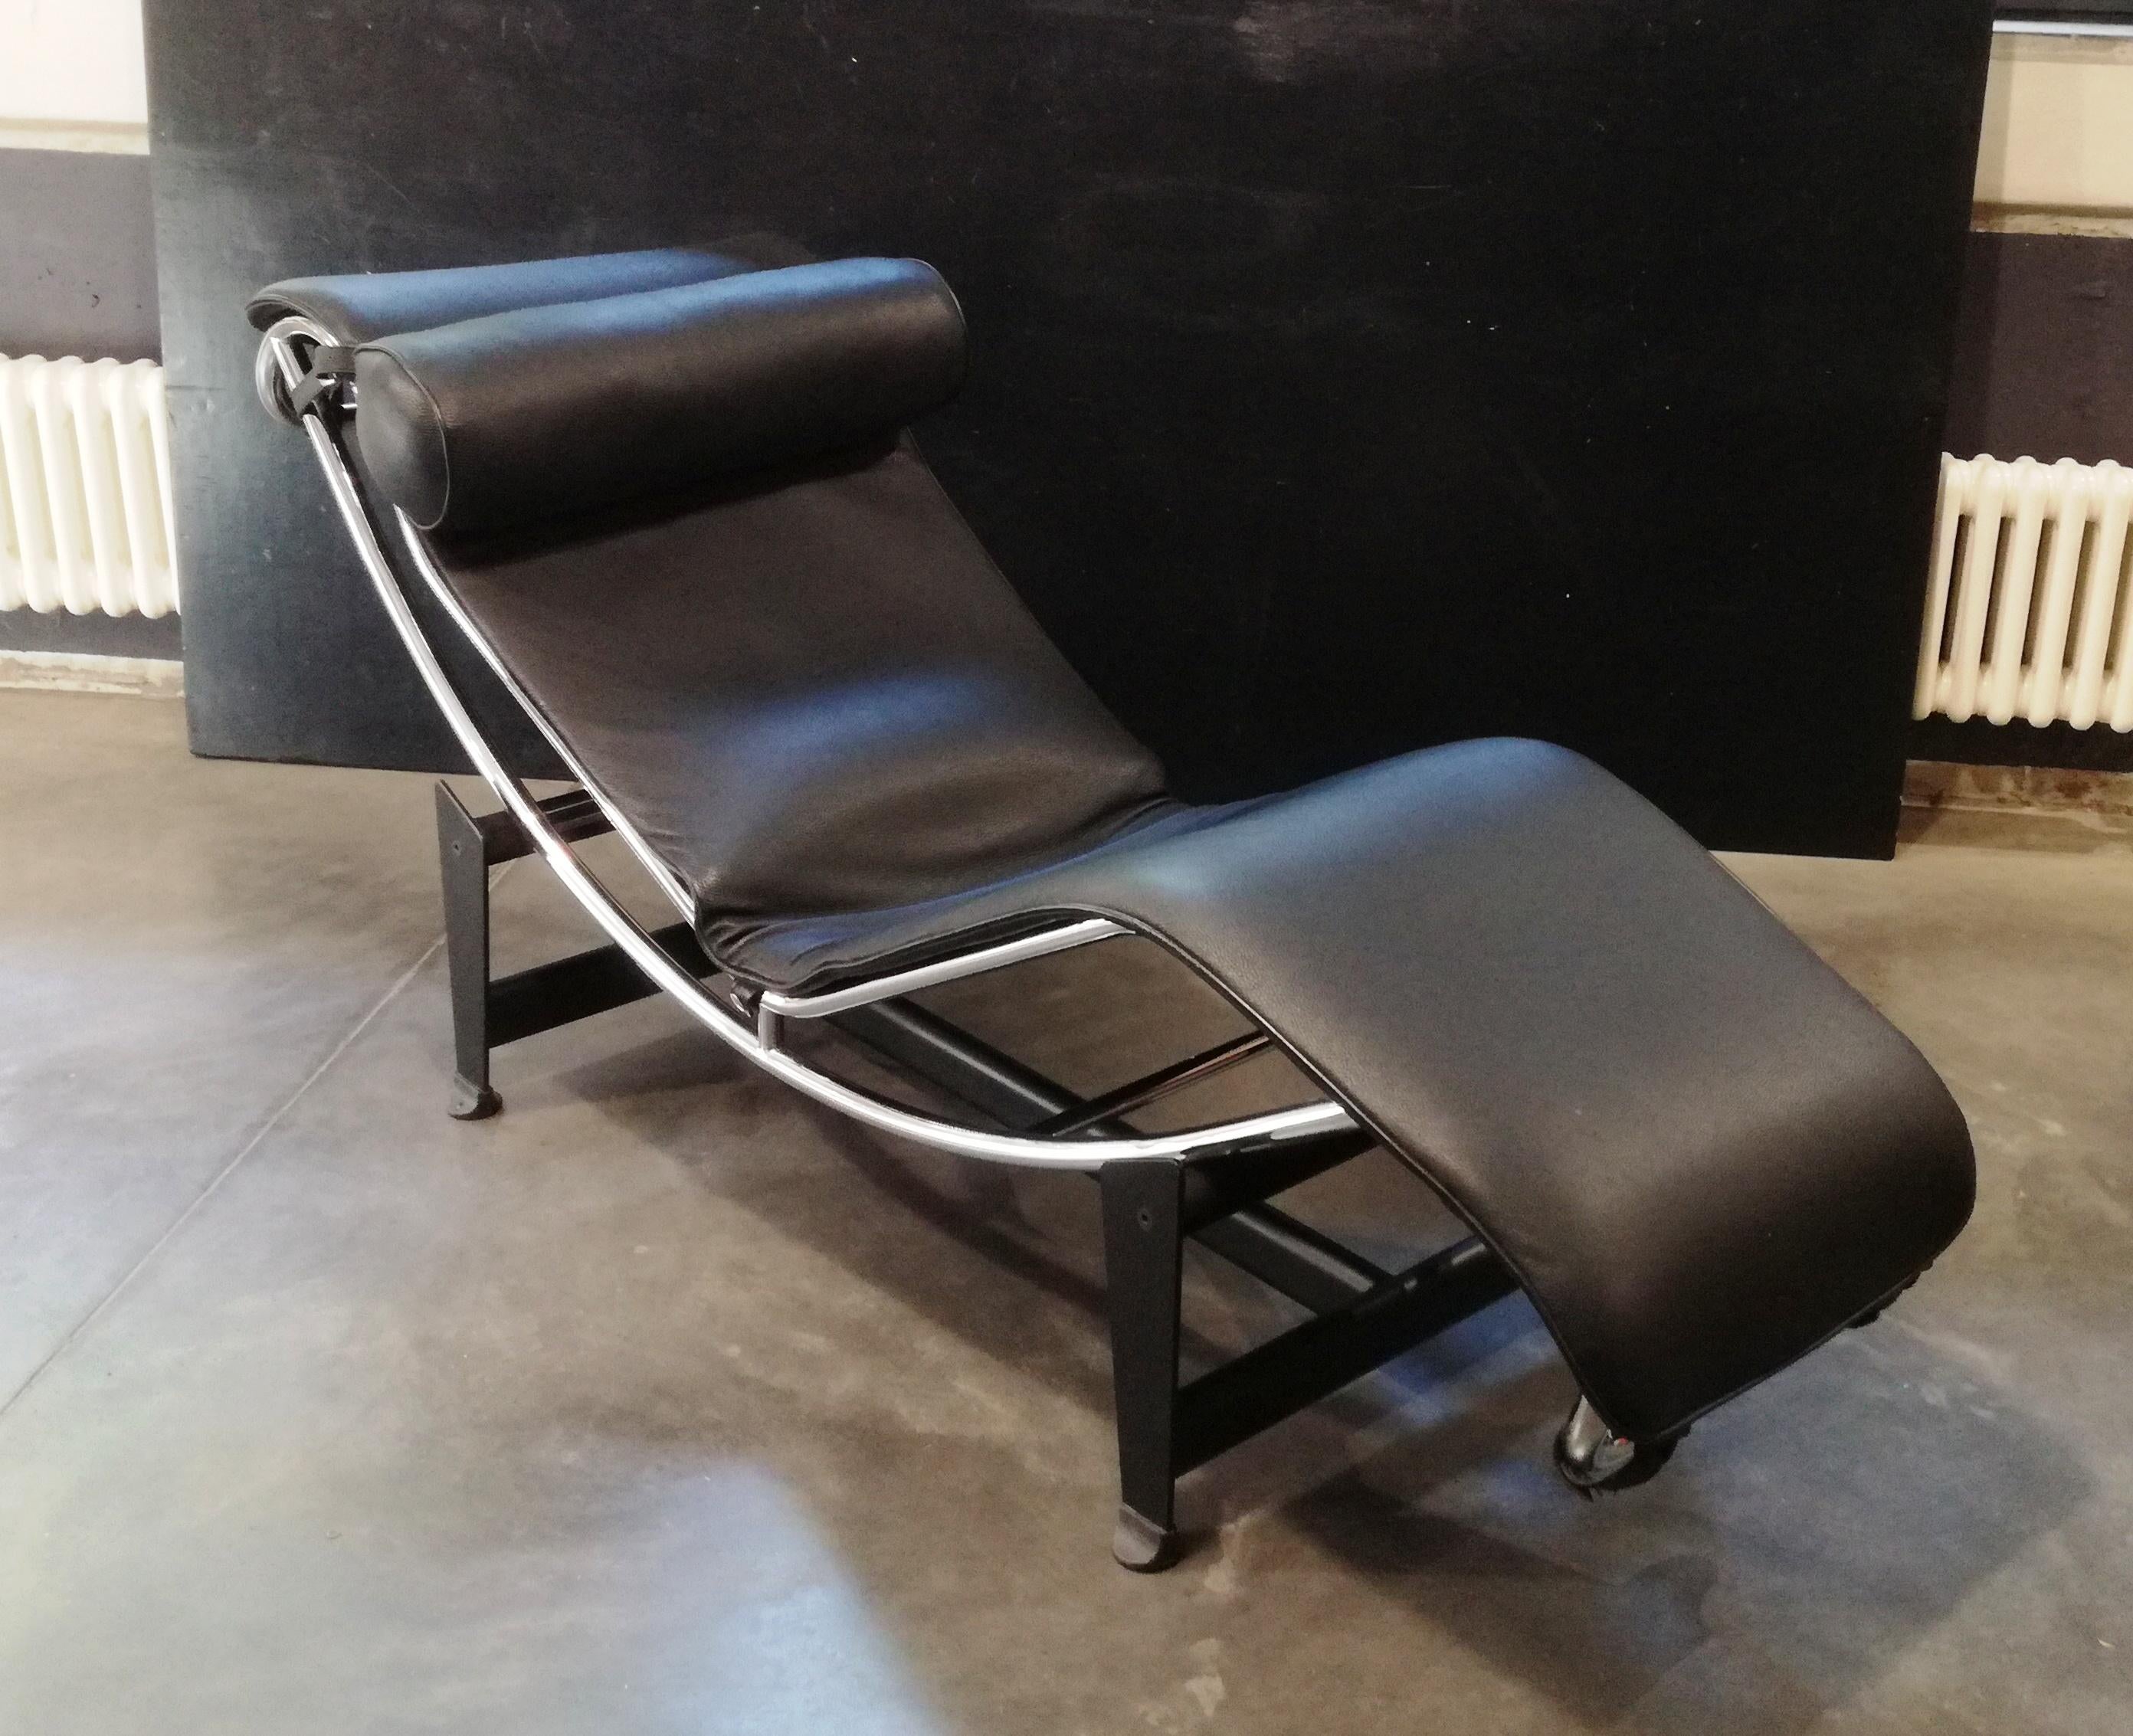 Loungue Chair Di Ispirazione Bauhaus, Anni 90 In Good Condition For Sale In Felino, IT